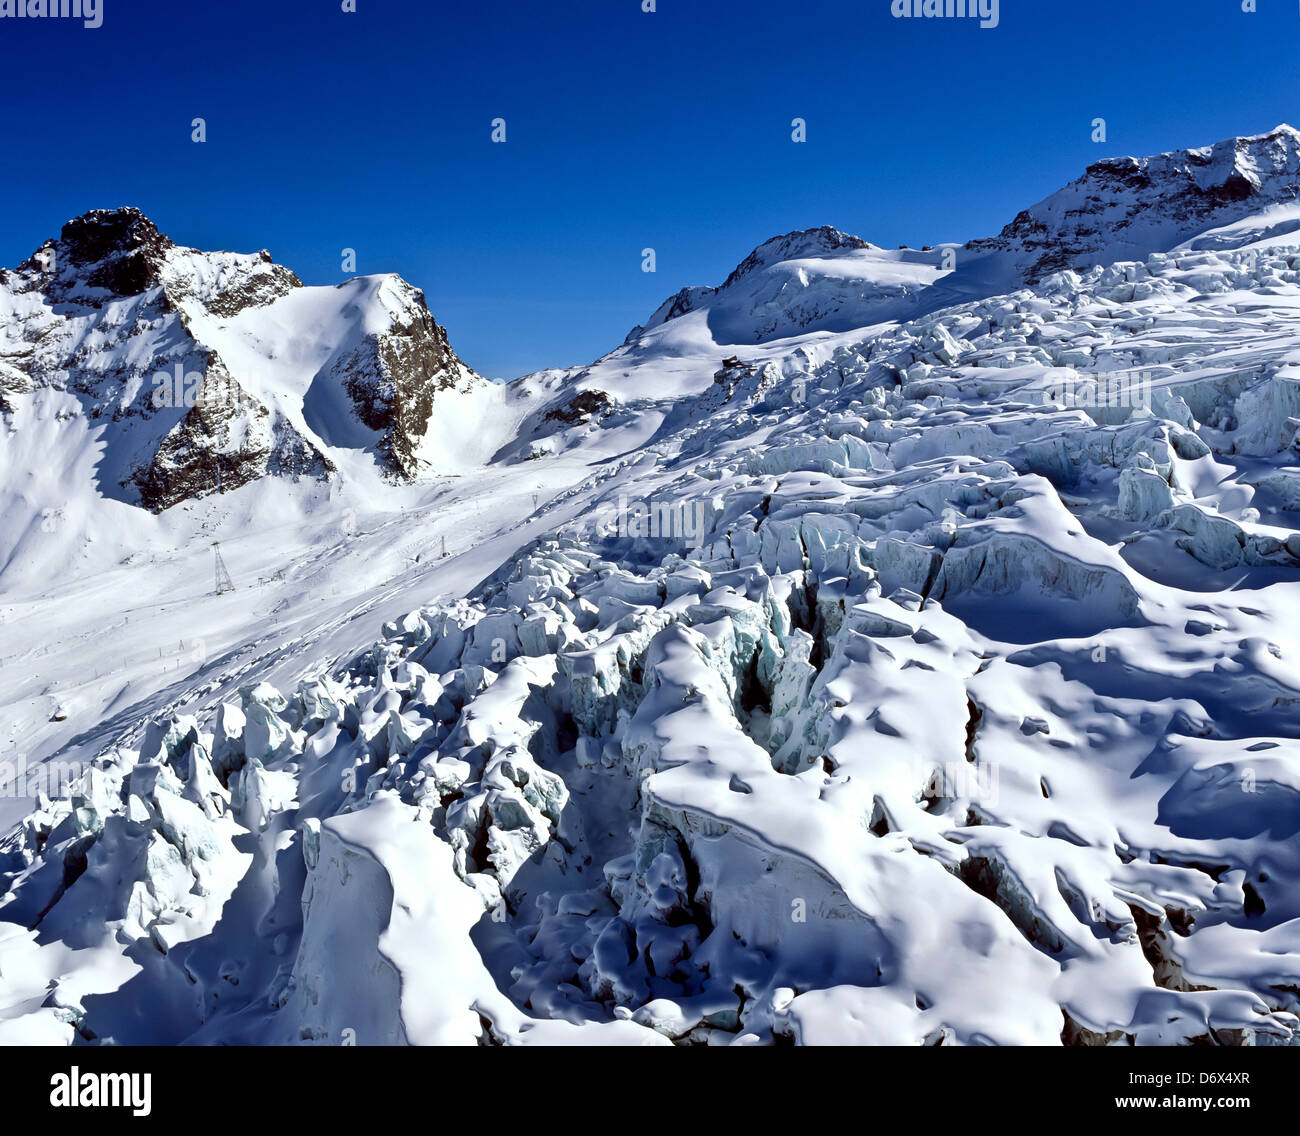 8546. Glacier de Fee, Saas fee, Valais, Suisse, Europe Banque D'Images